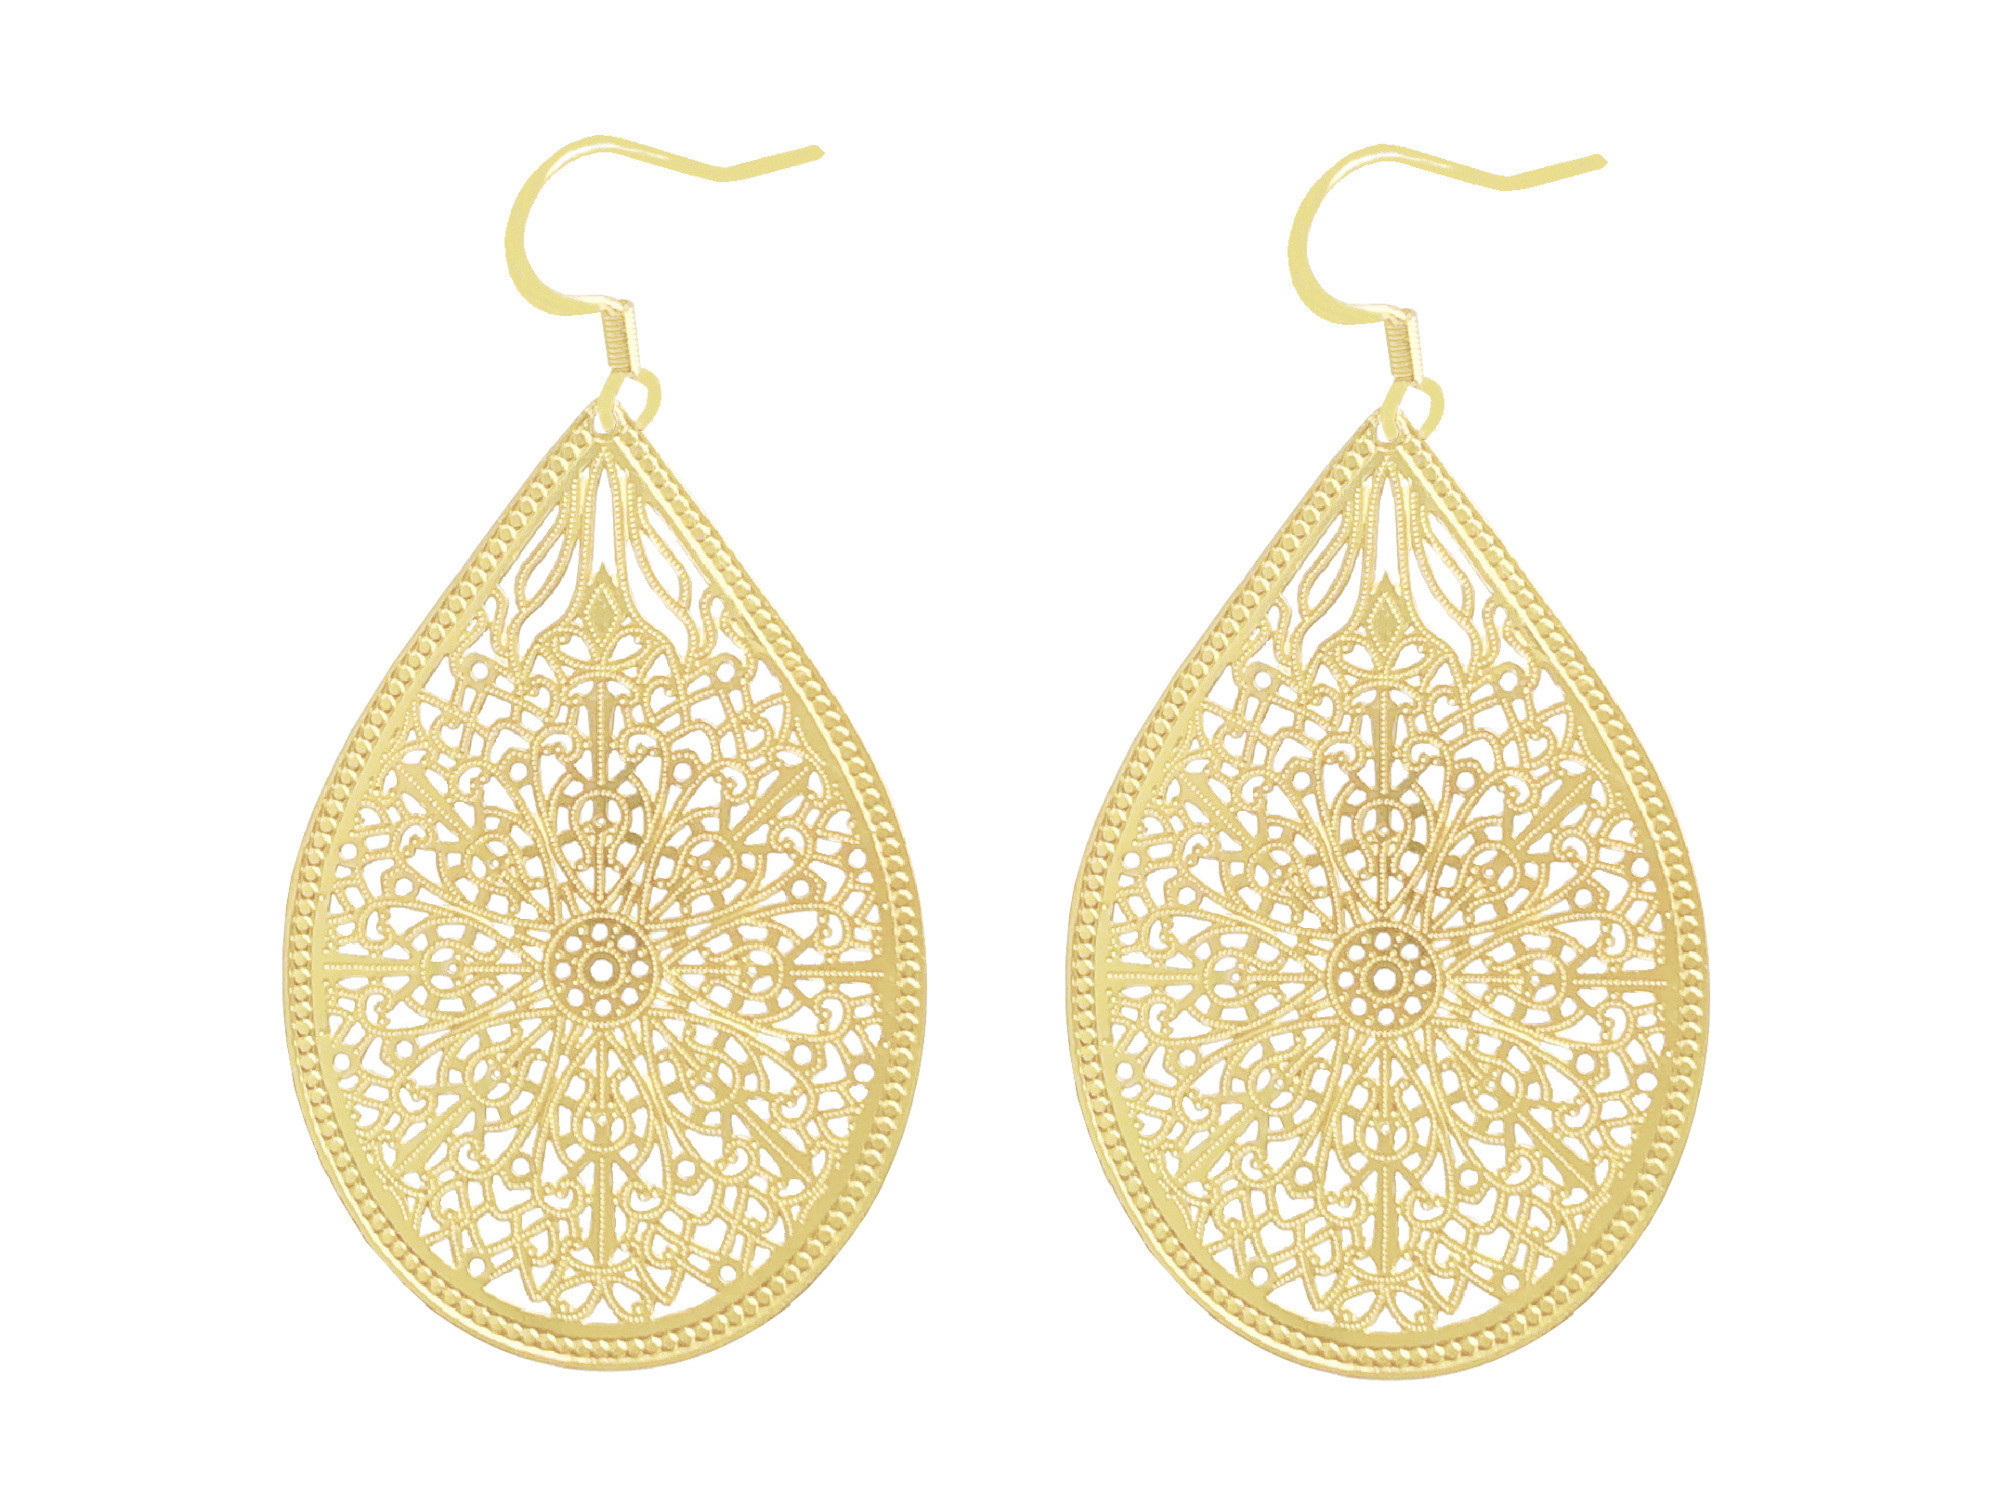 Boucles doreilles MANSOURIA pendantes acier inoxydable doré pendentif goutte dentelle minimaliste